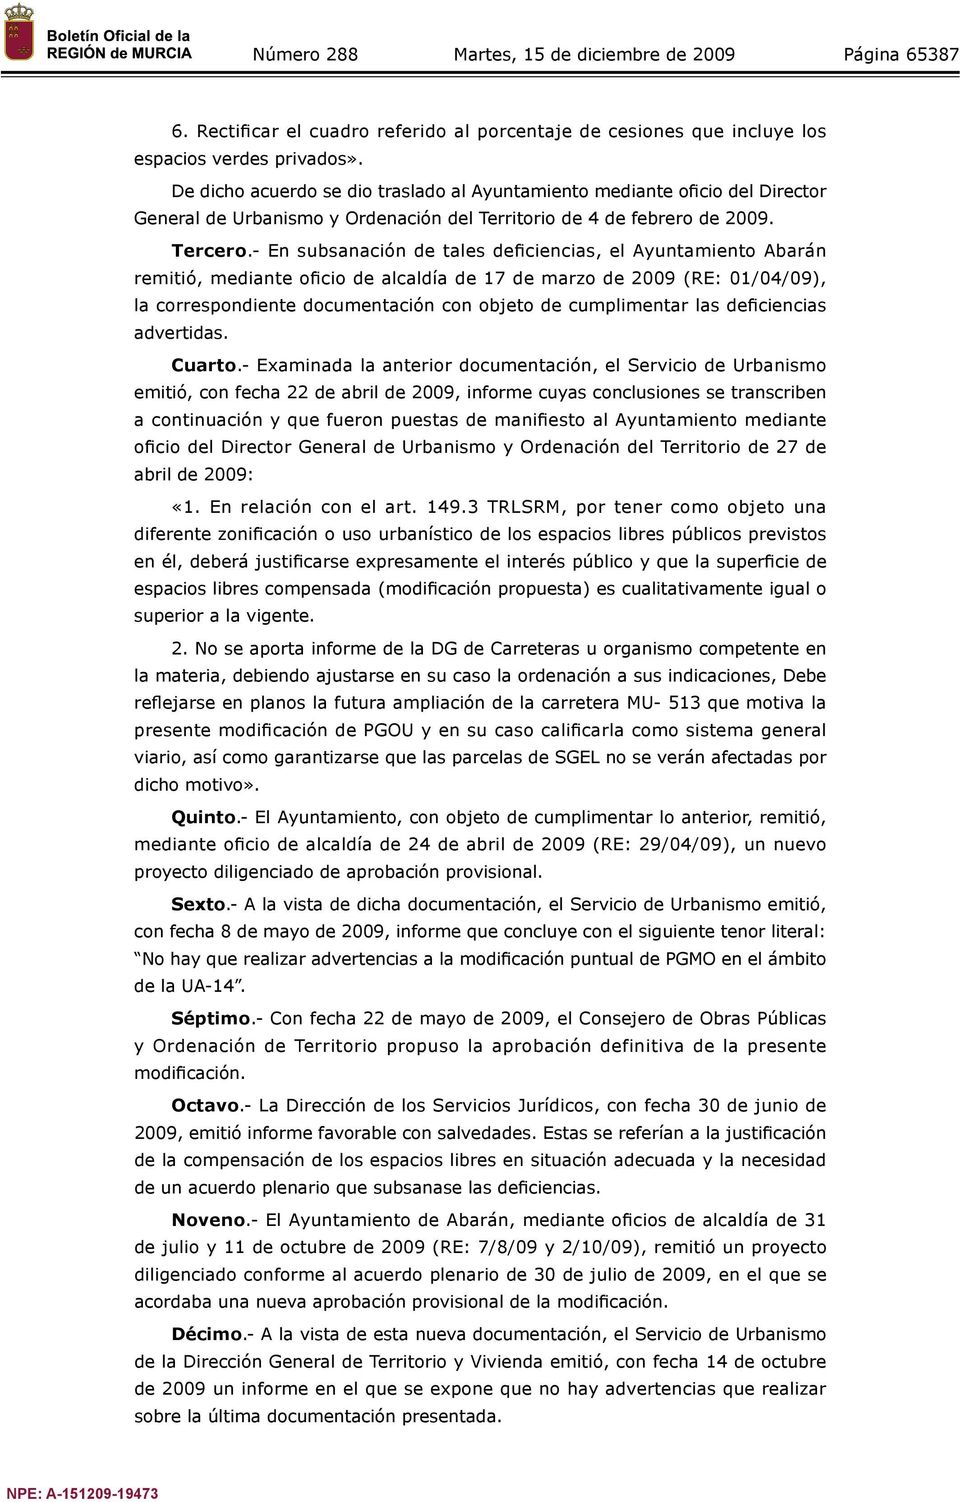 - En subsanación de tales deficiencias, el Ayuntamiento Abarán remitió, mediante oficio de alcaldía de 17 de marzo de 2009 (RE: 01/04/09), la correspondiente documentación con objeto de cumplimentar